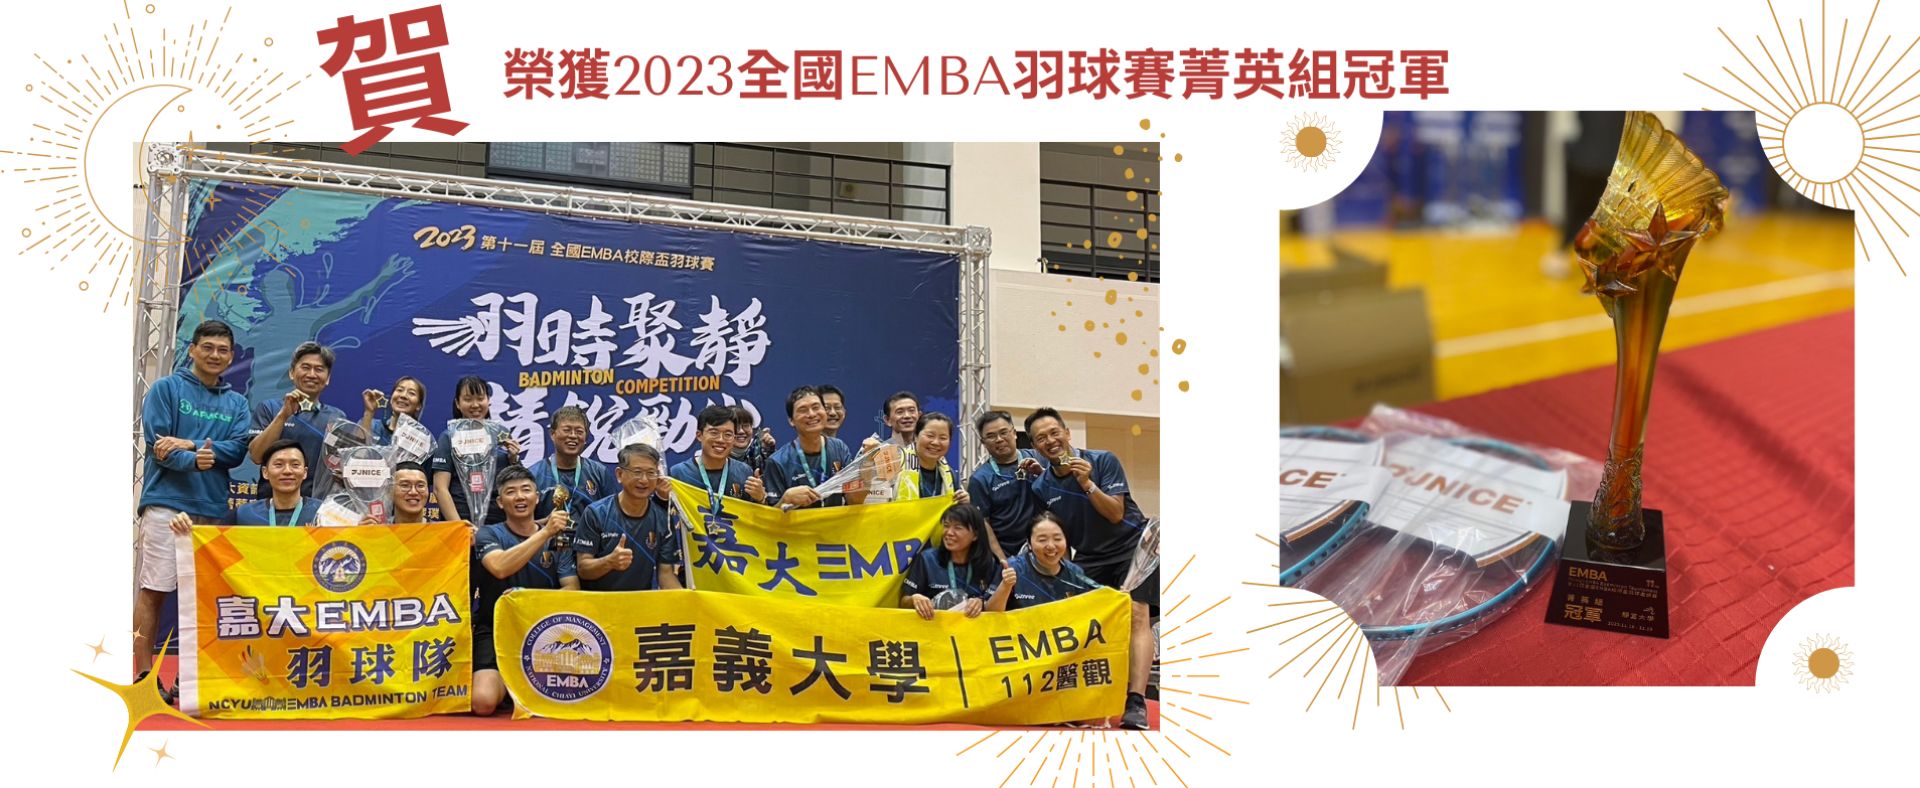 榮獲2023全國EMBA羽球賽菁英組冠軍